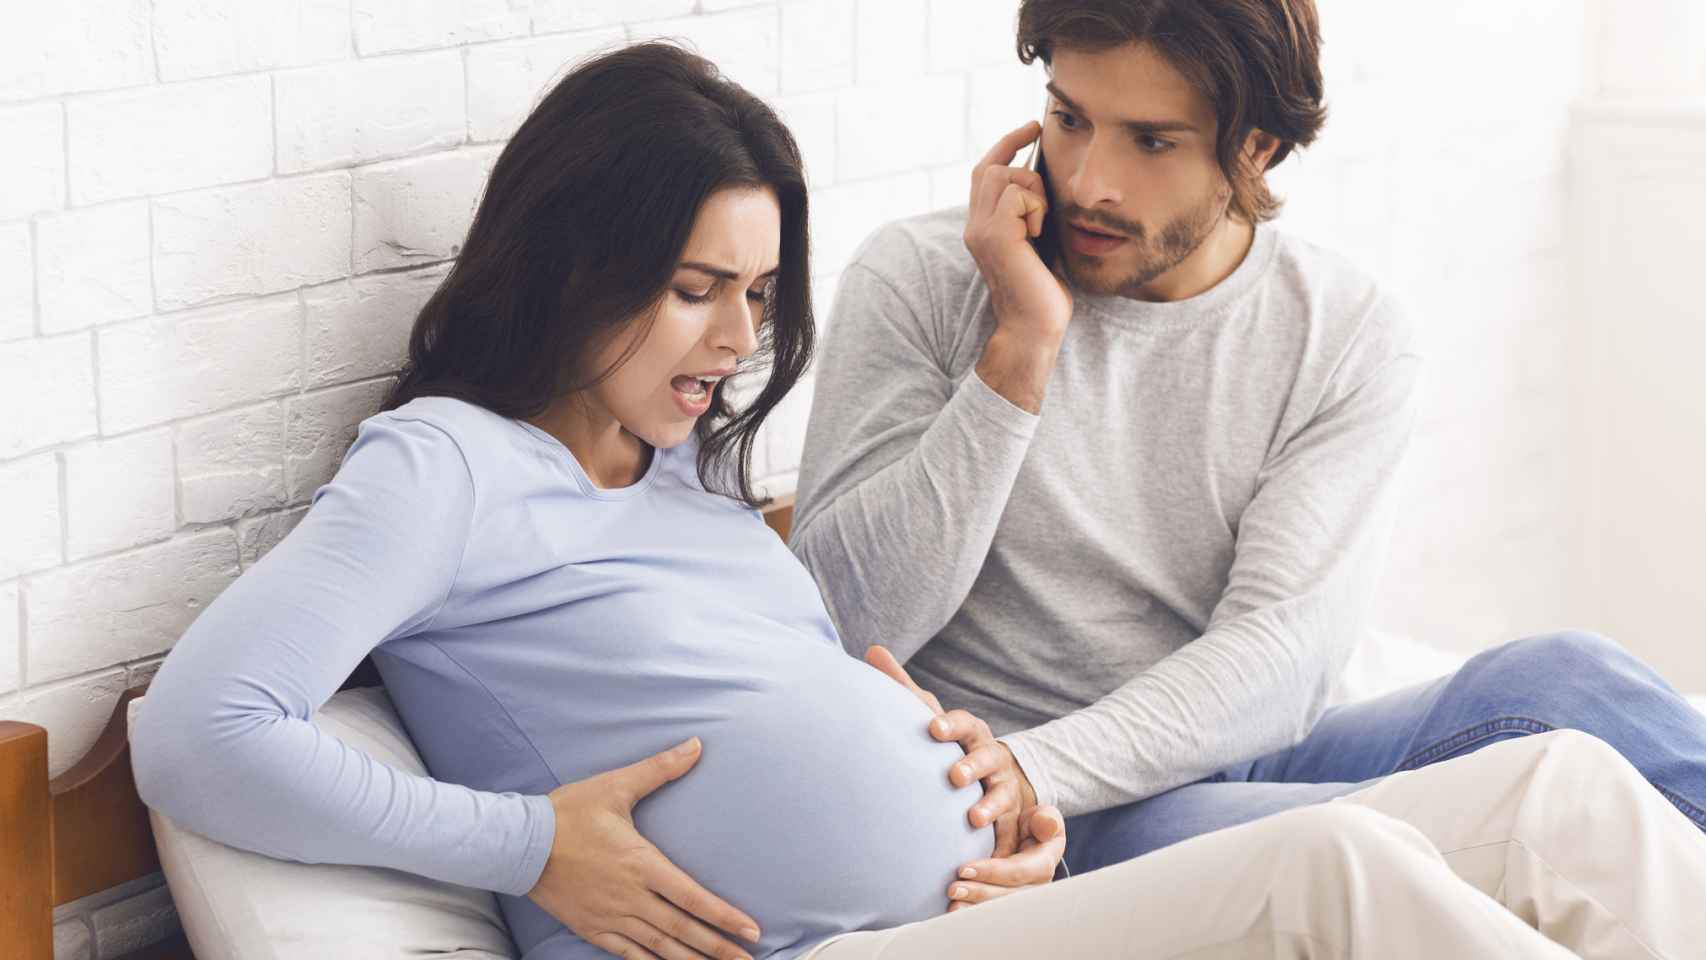 Una mujer embarazada empieza a tener contracciones y su pareja llama al doctor.